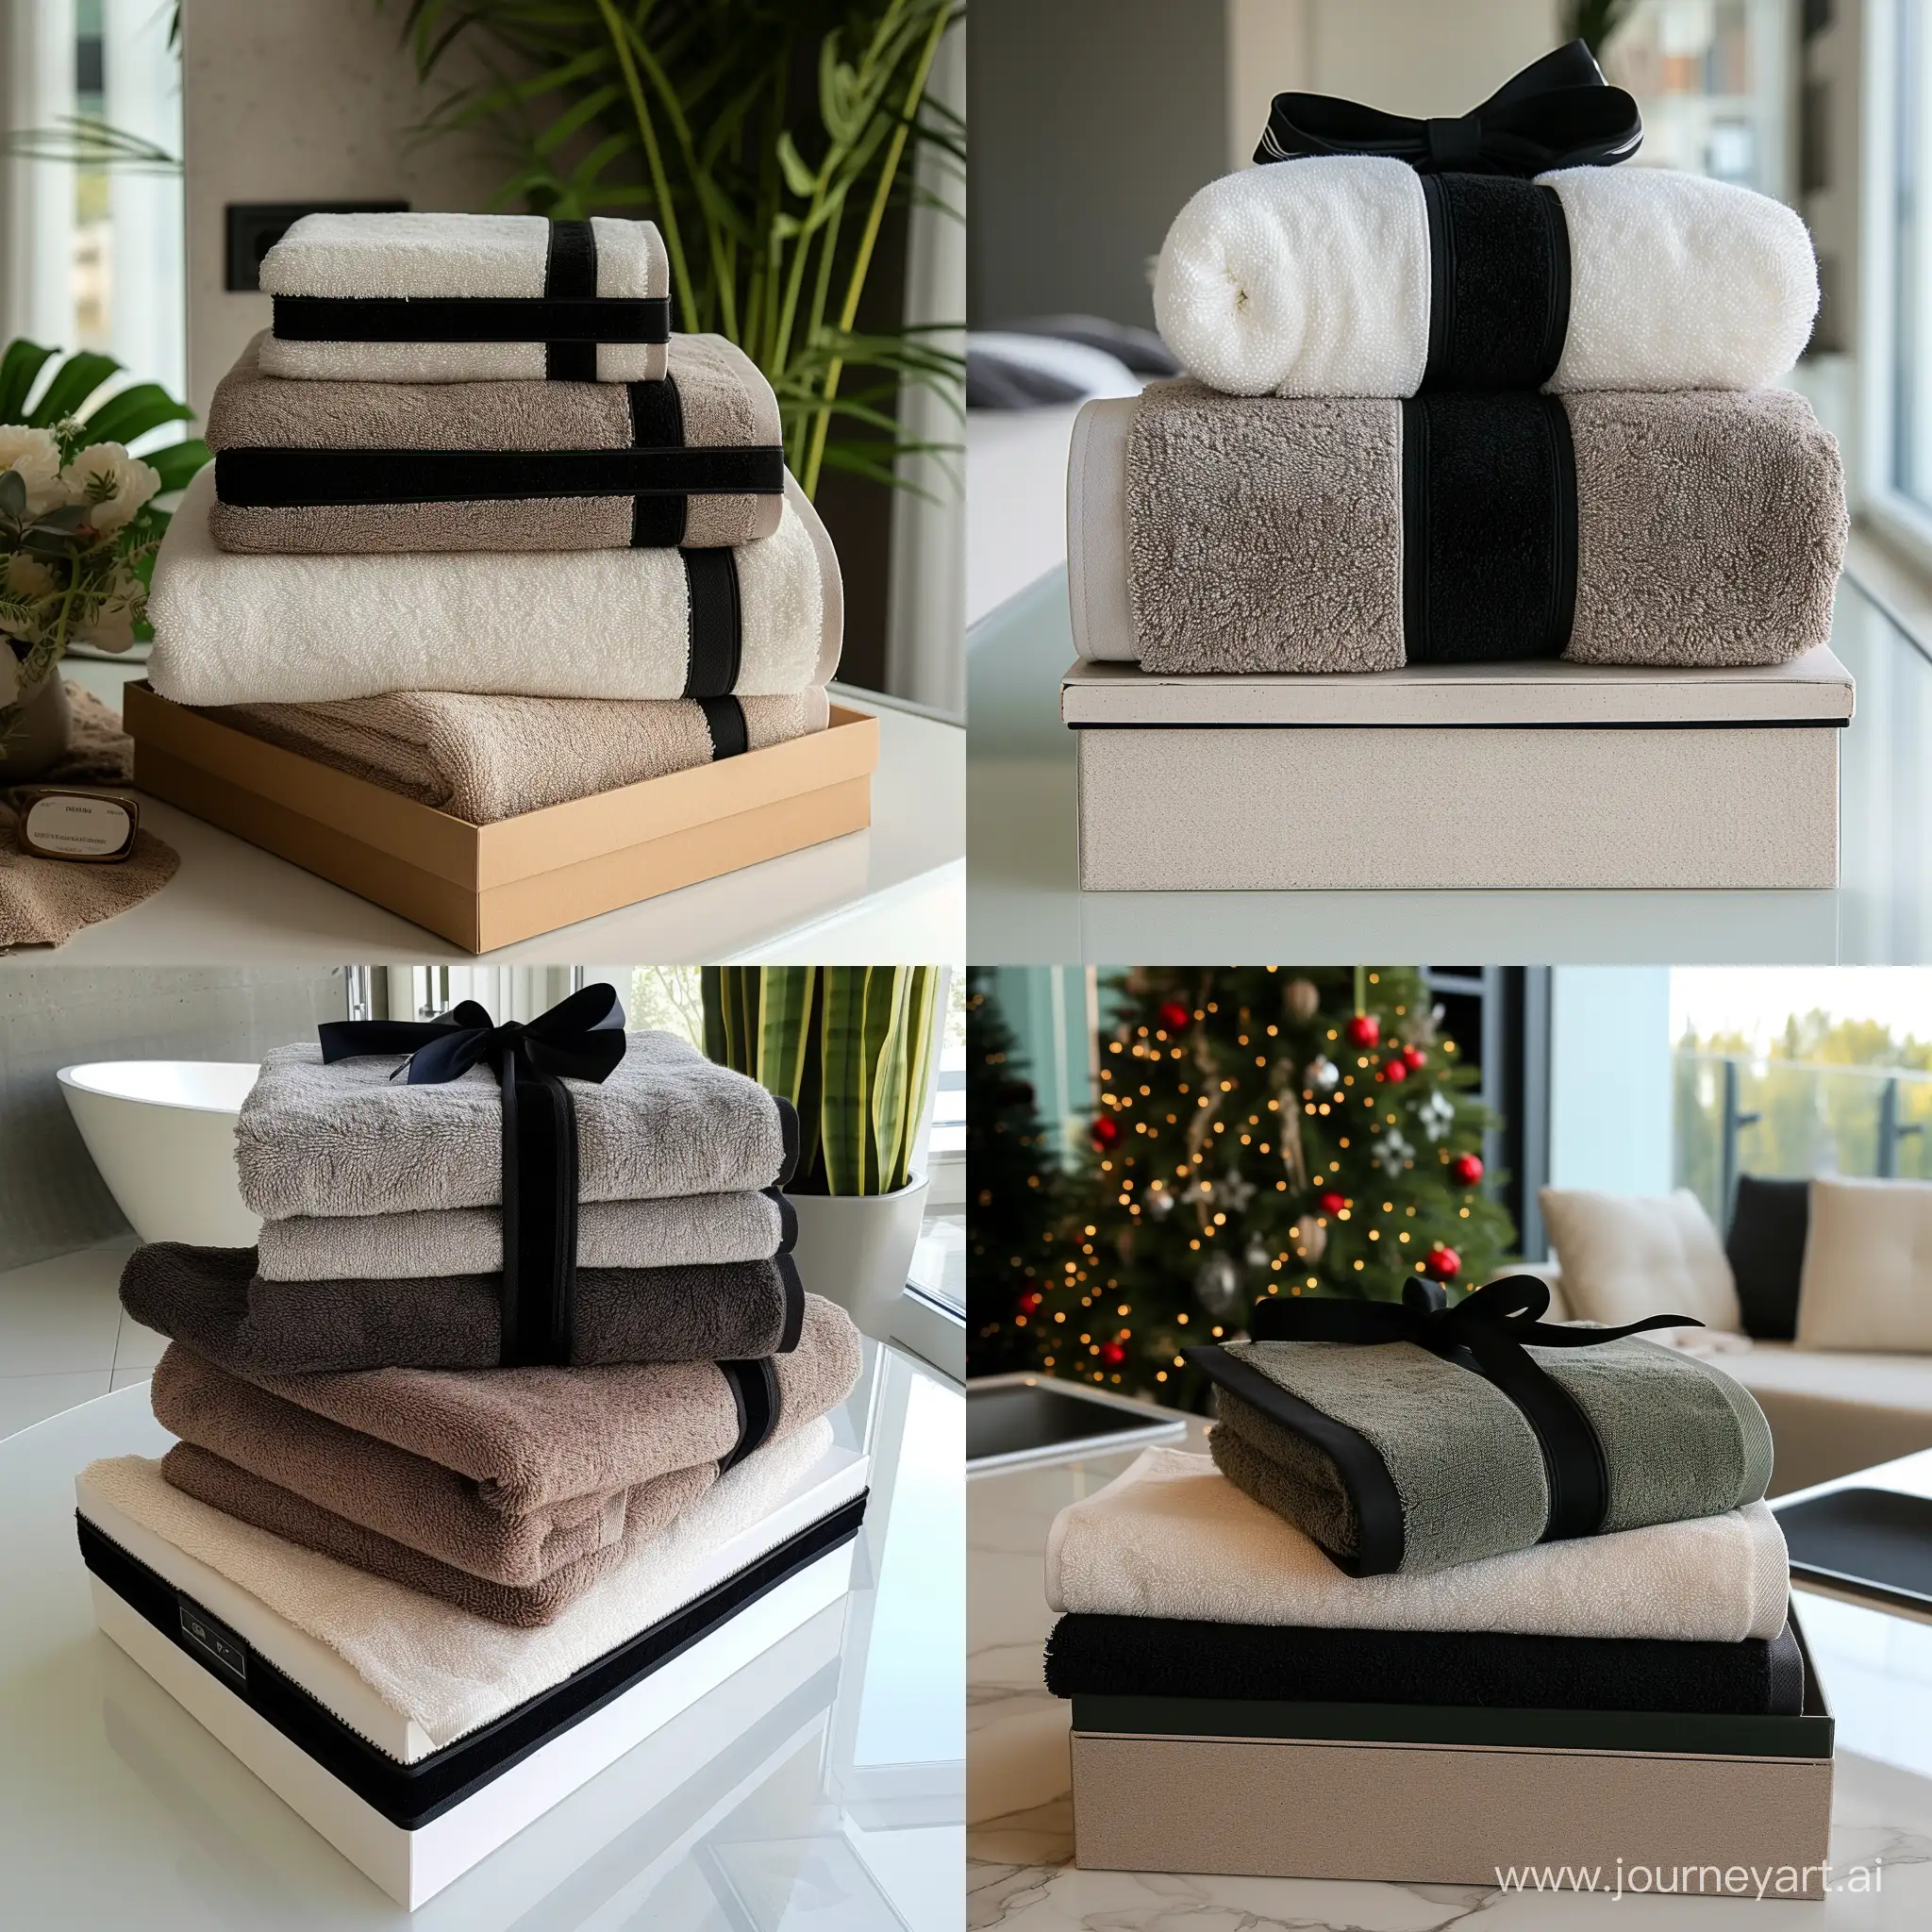 Покажи доднотонные банные полотенца самых популярных цветов с черными краями по всему периметру в красивой подарочной упаковке в стильной светлой дизайнерской квартире